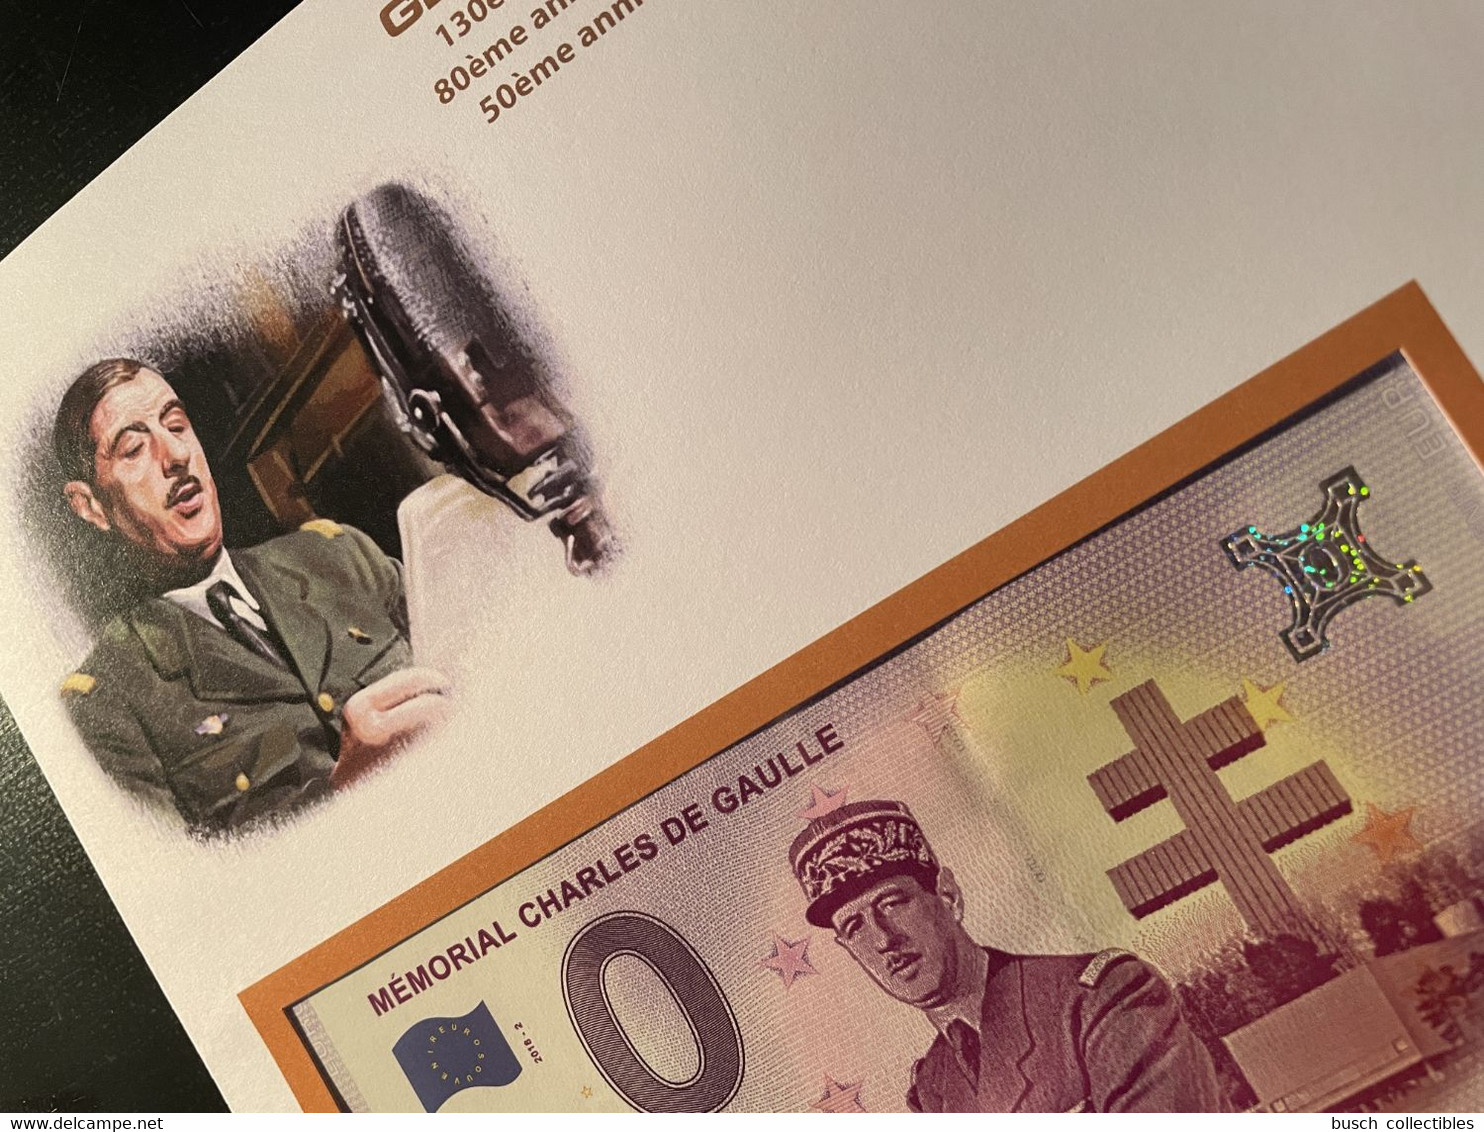 Euro Souvenir Banknote Cover Général Charles De Gaulle Appel 18 Juin 130ème 80ème 50ème Annivers Djibouti Banknotenbrief - Private Proofs / Unofficial